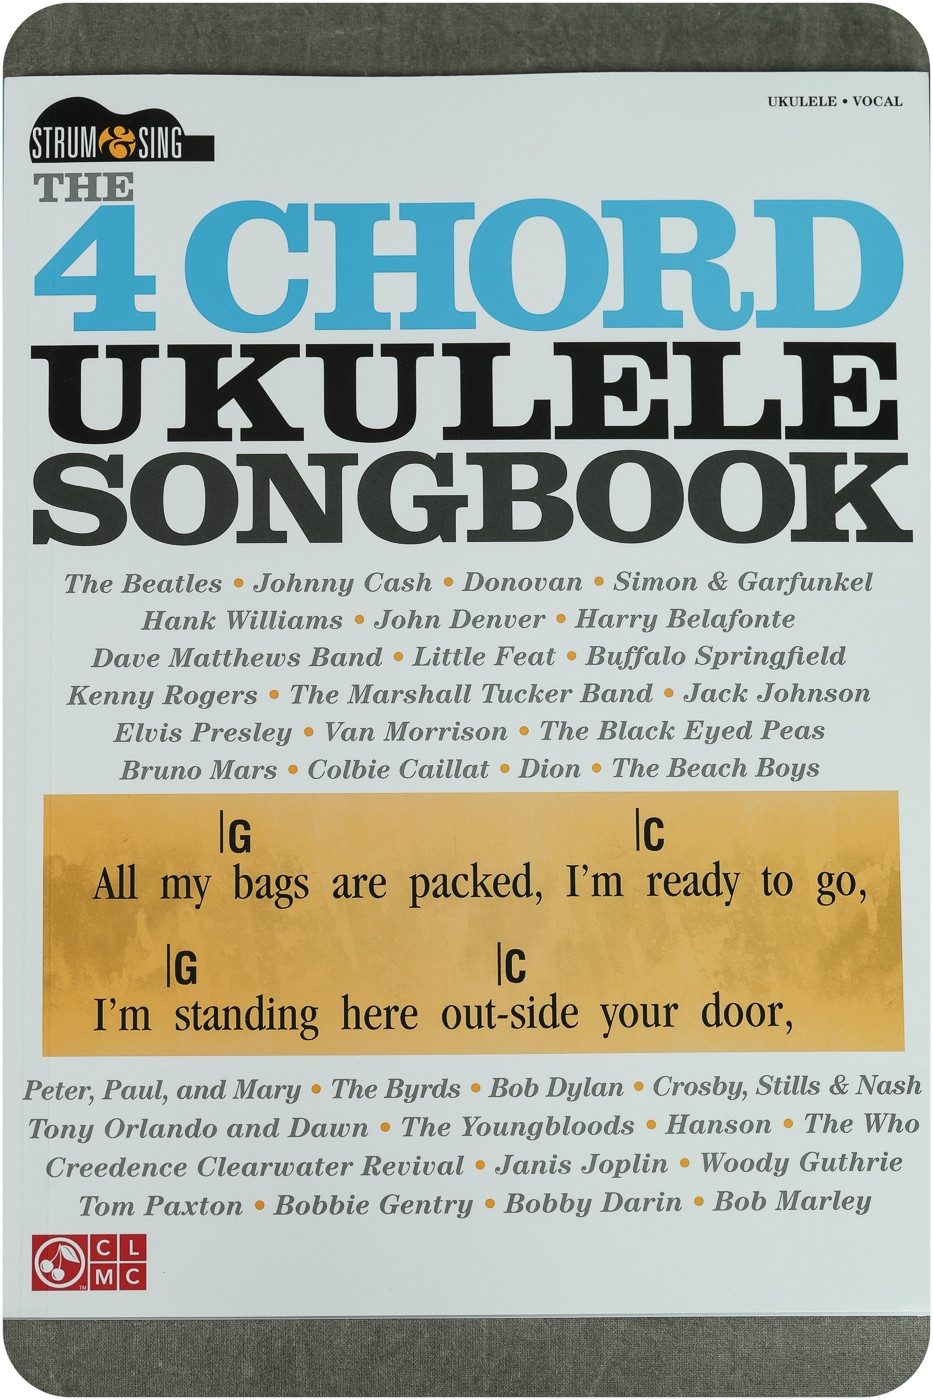 https://theukulelesite.com/media/catalog/product/cache/1e7c33fa3c1eddeb75509eb29144213e/4/_/4_chord_ukulele_songbook.jpg